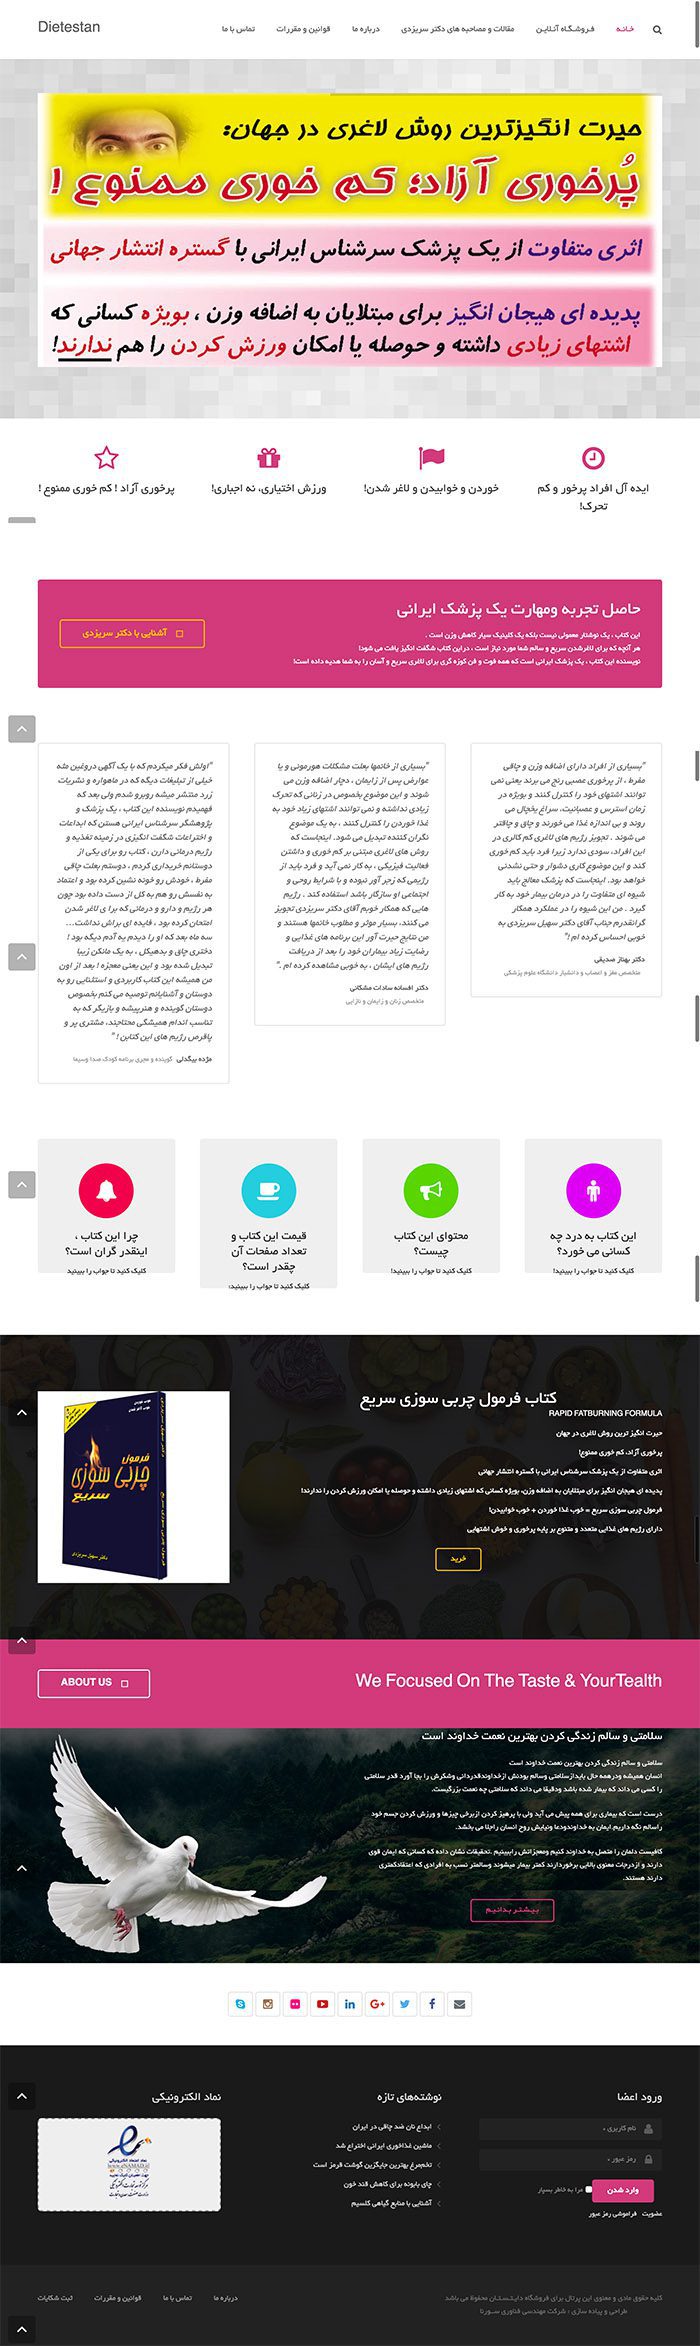 طراحی سایت فروشگاه دایتستان توسط شرکت طراحی سایت سورنا در کرمان